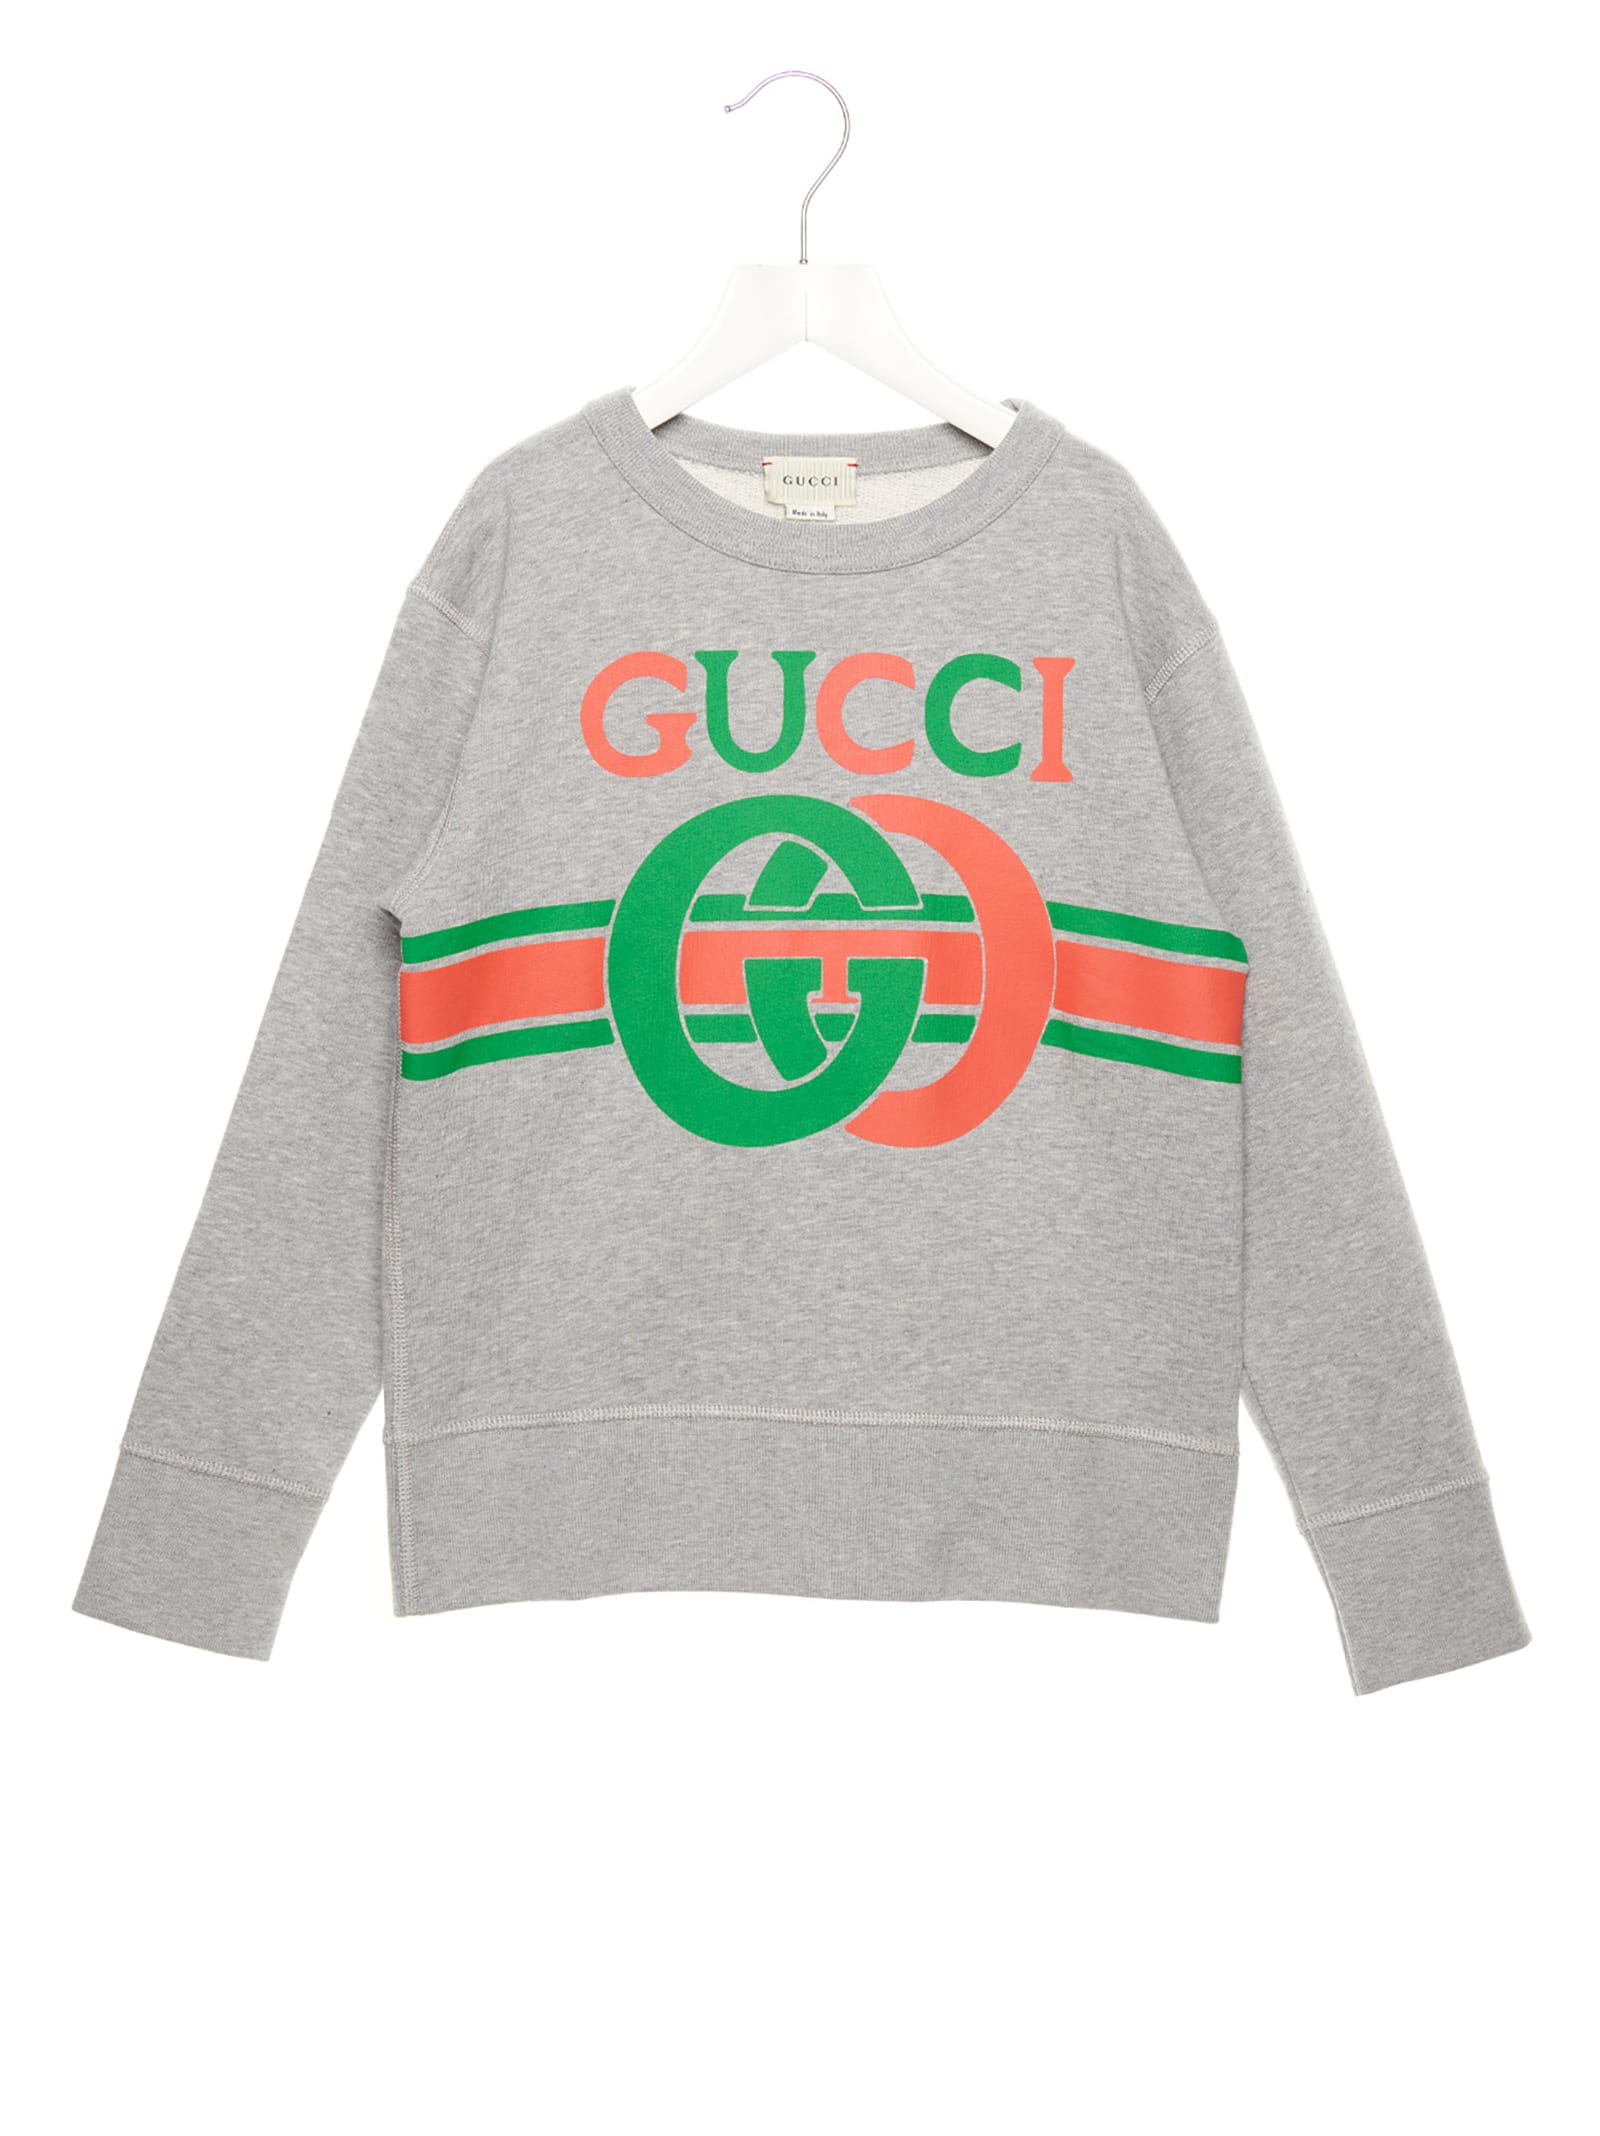 gucci clothes price